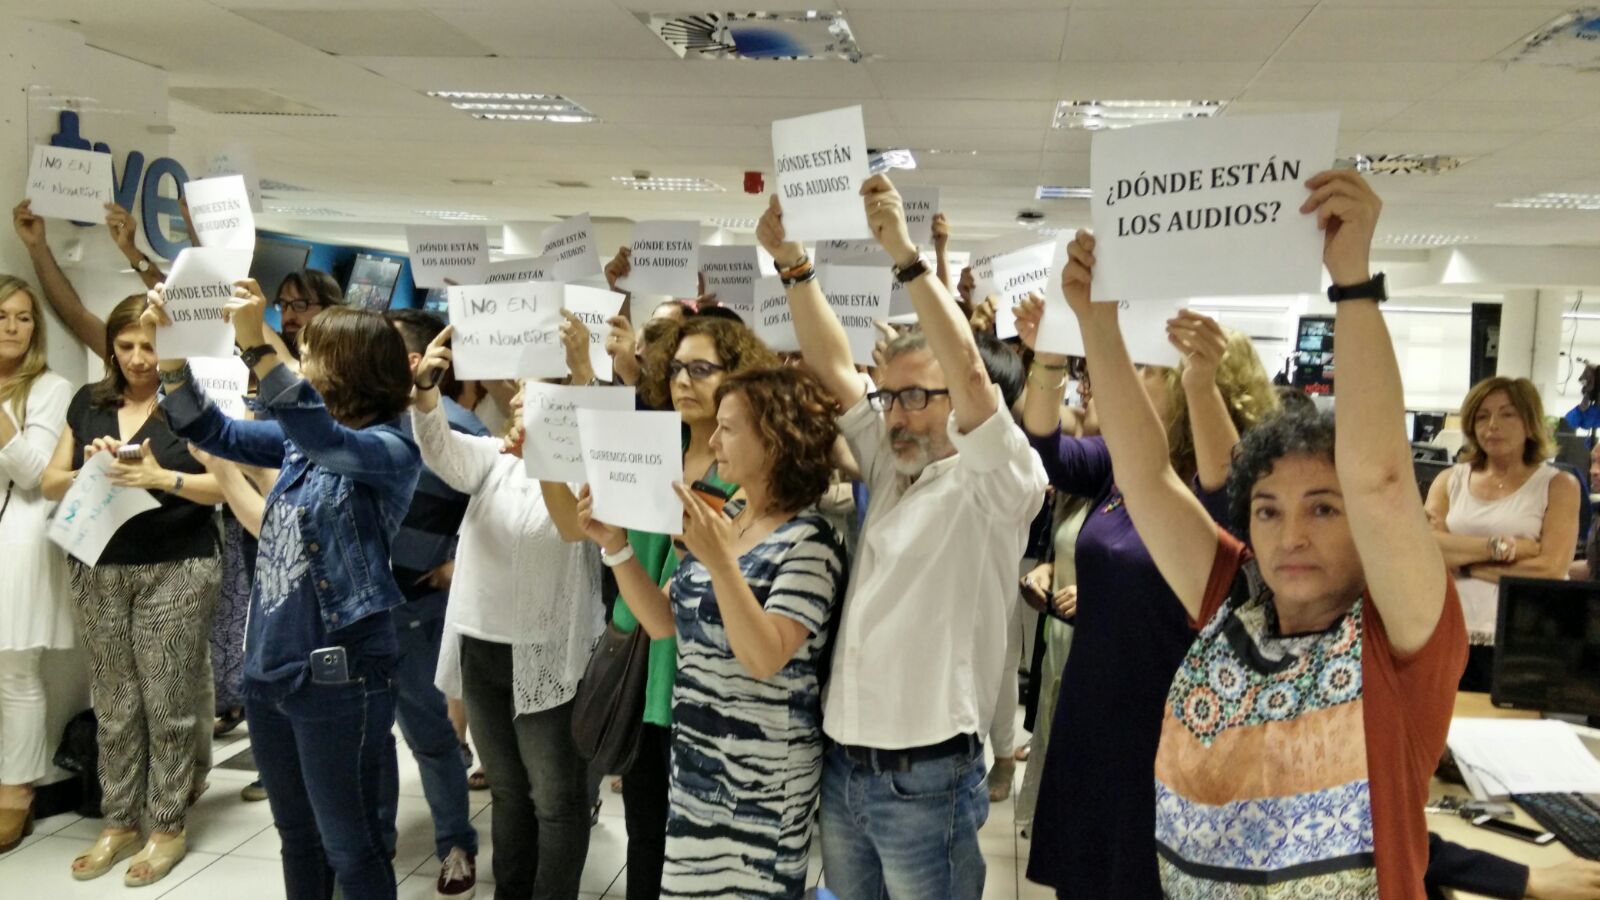 Una de las muchas protestas de los redactores de TVE por la situación de manipulación que viven en los informativos